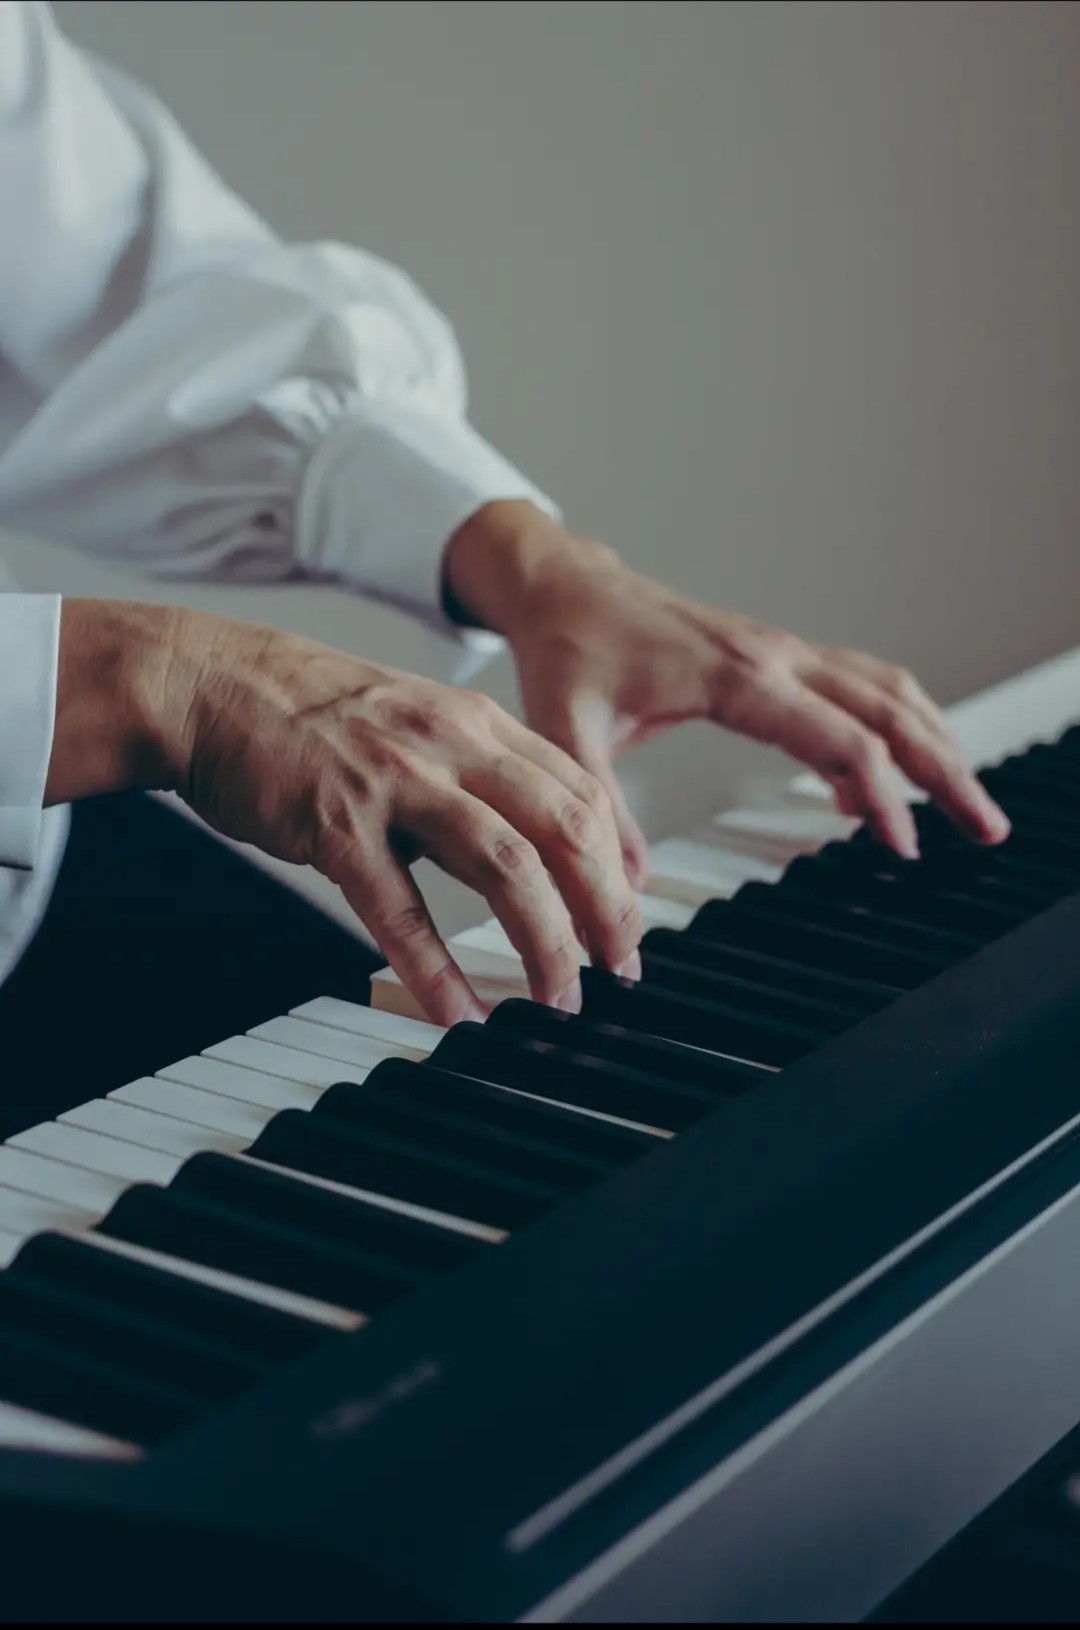 Правильное положение рук во время игры на фортепиано – важно, но не главная цель уроков музыки. Фото: facebook.com/lada.los